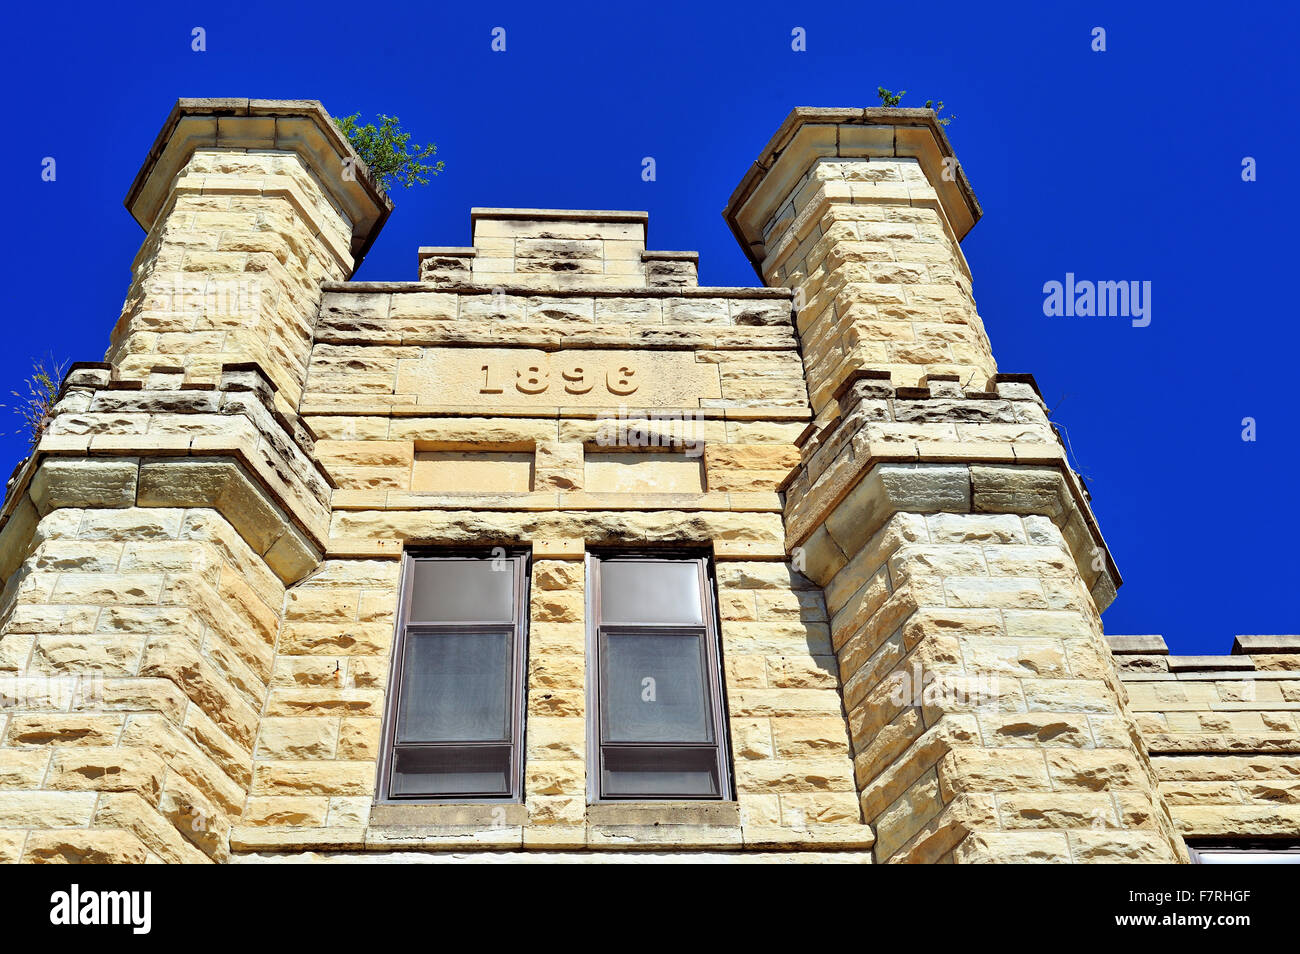 Un bâtiment ajouté en 1896 à la norme Joliet Correctional Centre, également connu sous le pénitencier d'état de l'Illinois et la prison de Joliet. Joliet, Illinois, USA. Banque D'Images